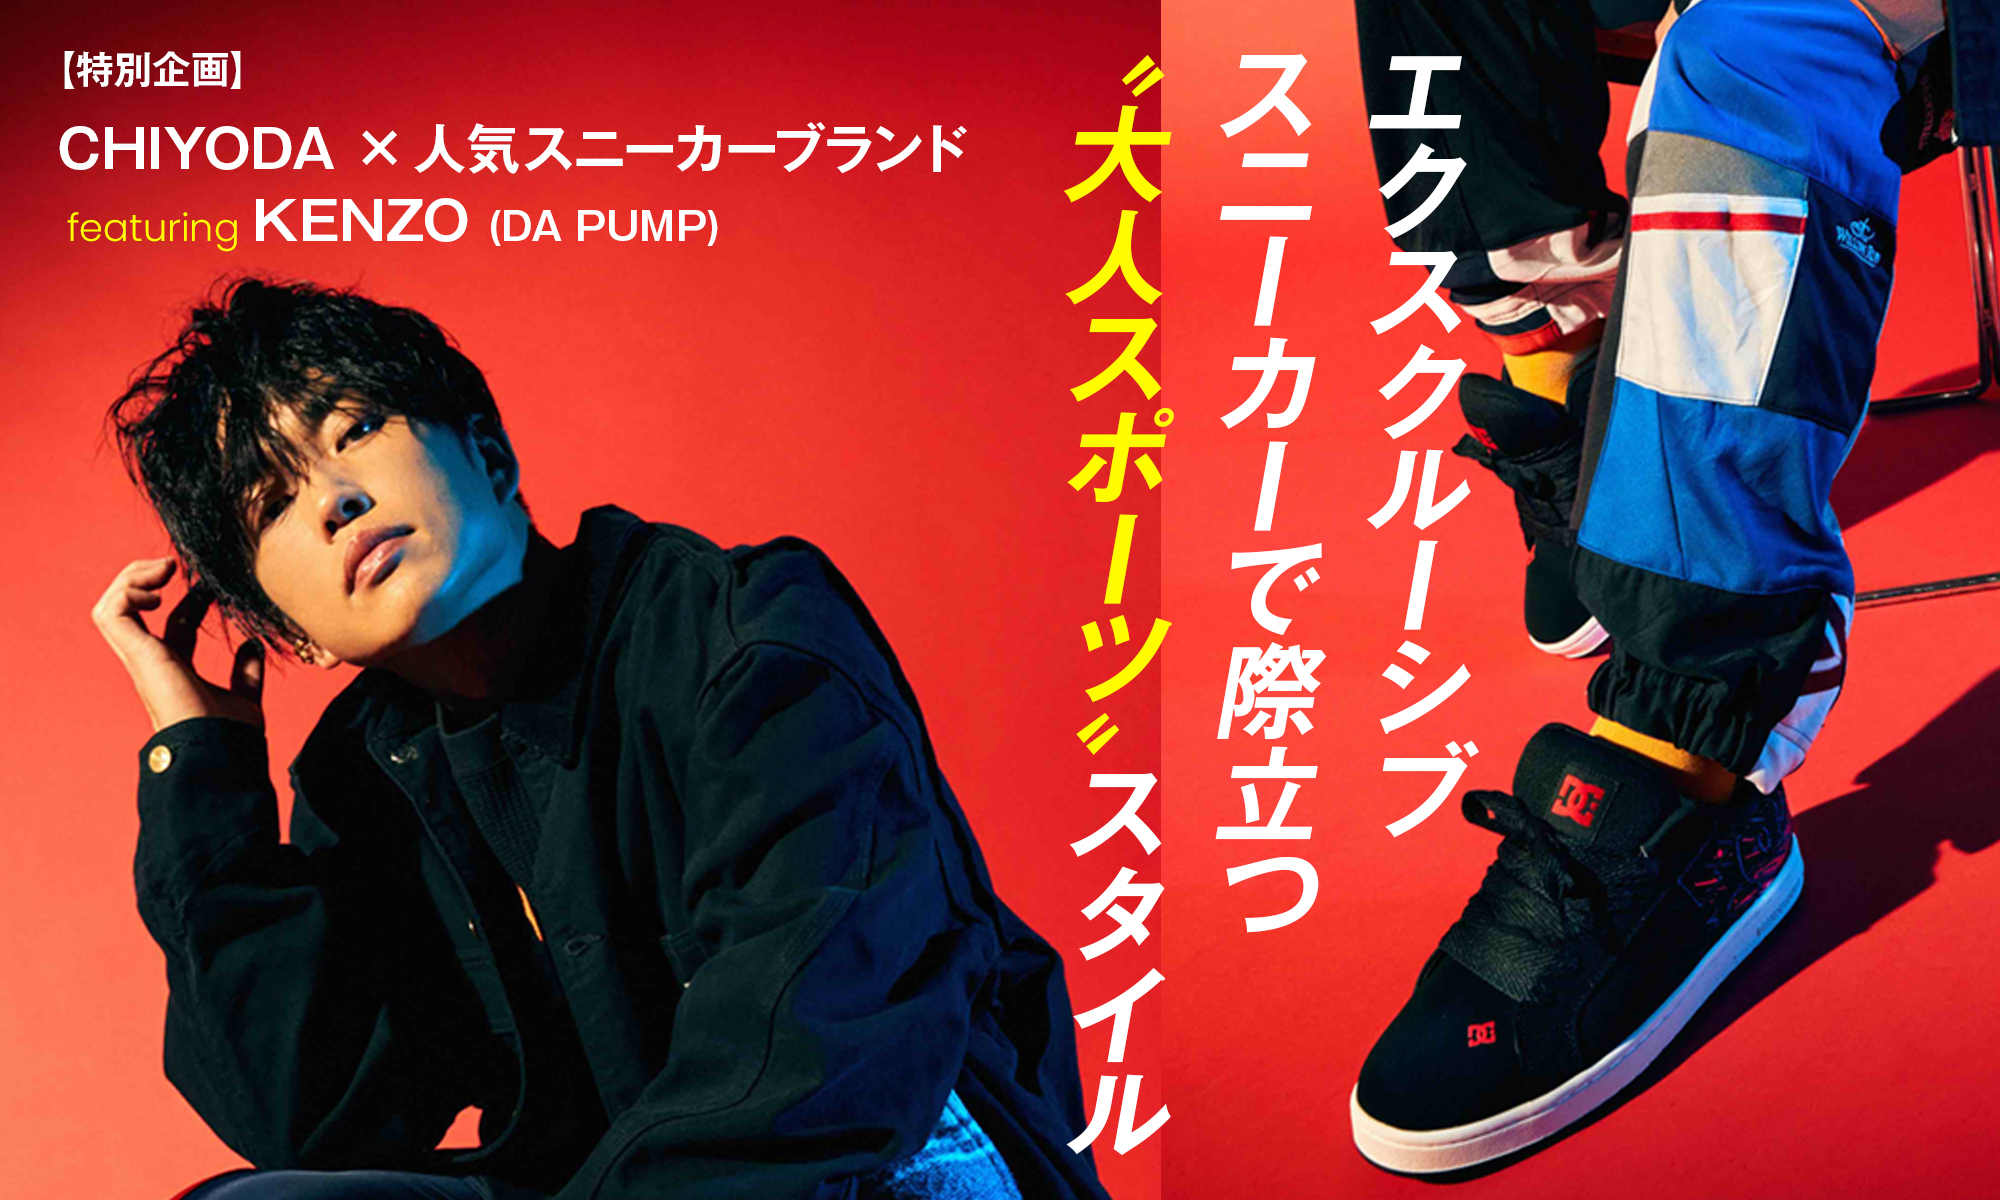 【特別企画】CHIYODA×人気スニーカーブランド featuring KENZO(DA PUMP) WEAR SPORTS STYLE! エクスクルーシブスニーカーで際立つ“大人スポーツ”スタイル